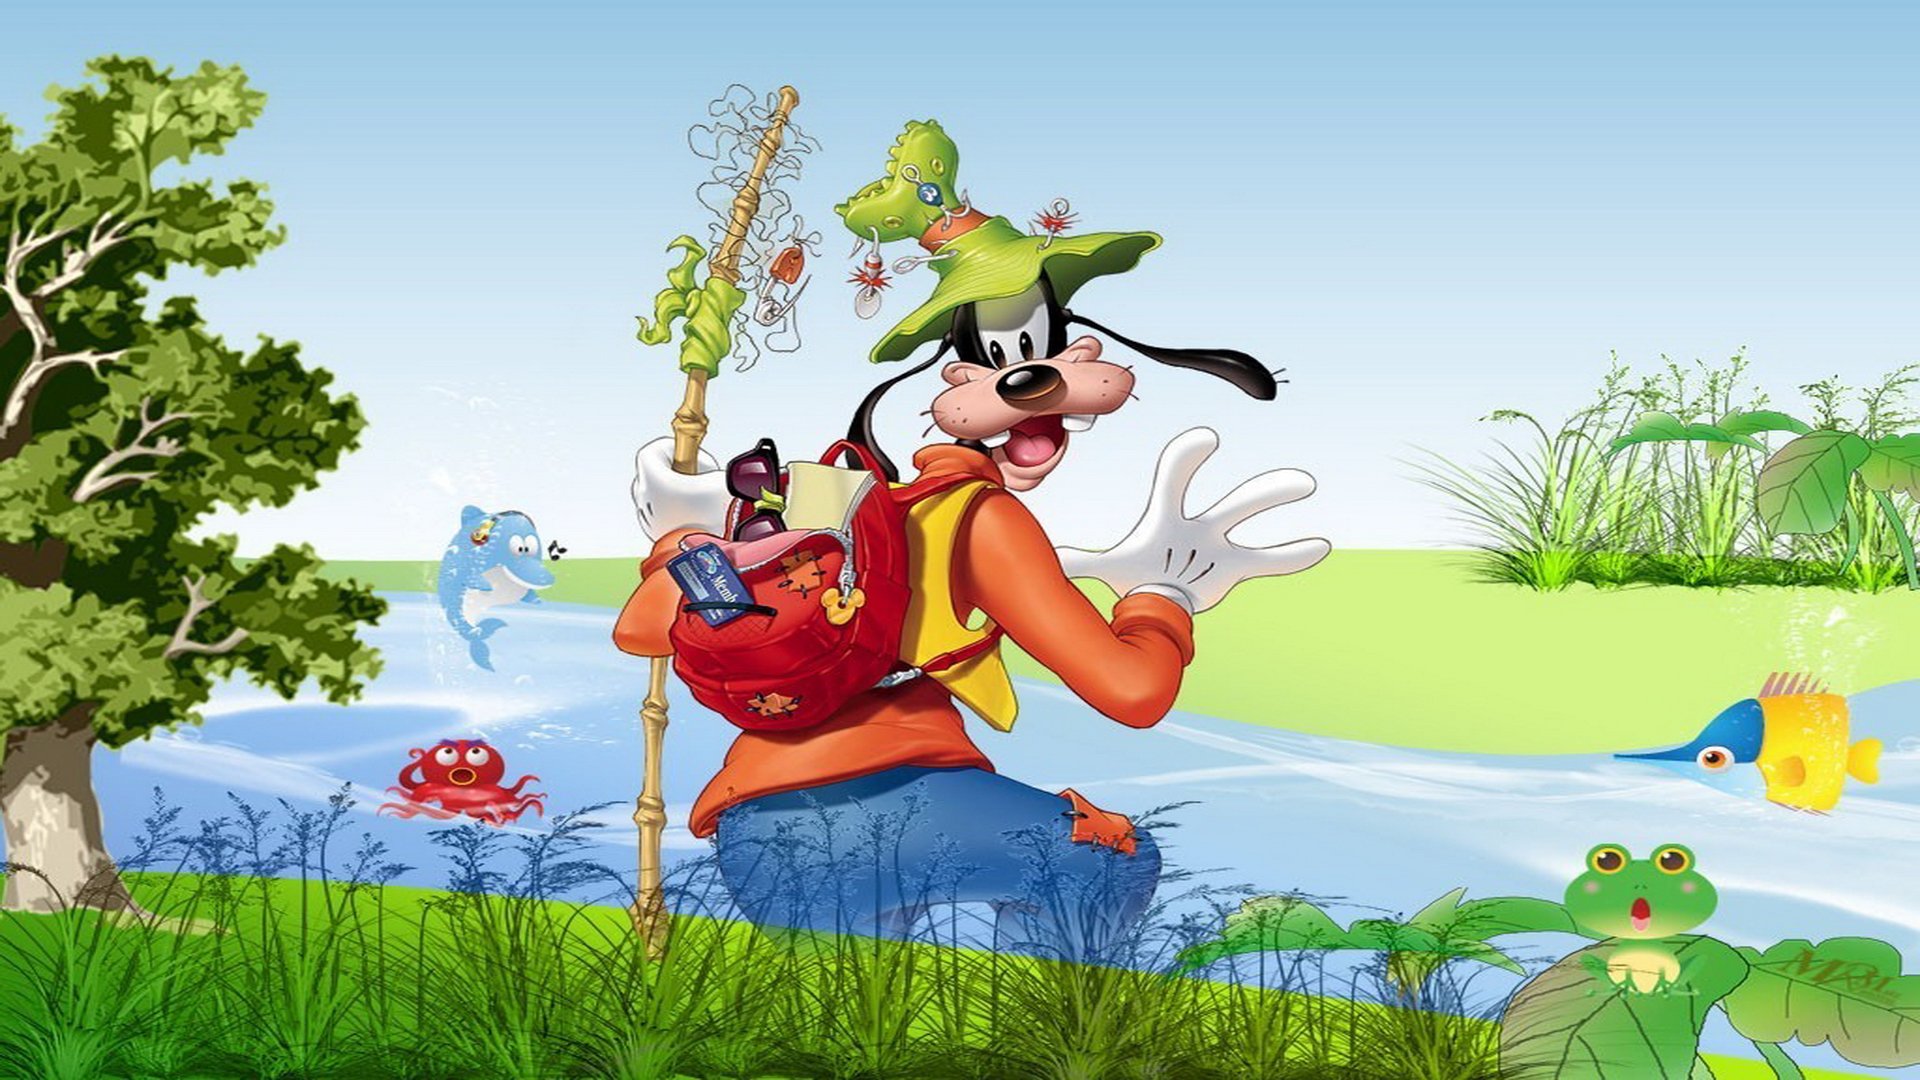 Goofy Disney Family Animation Fantasy 1goofy Edy Wallpaper